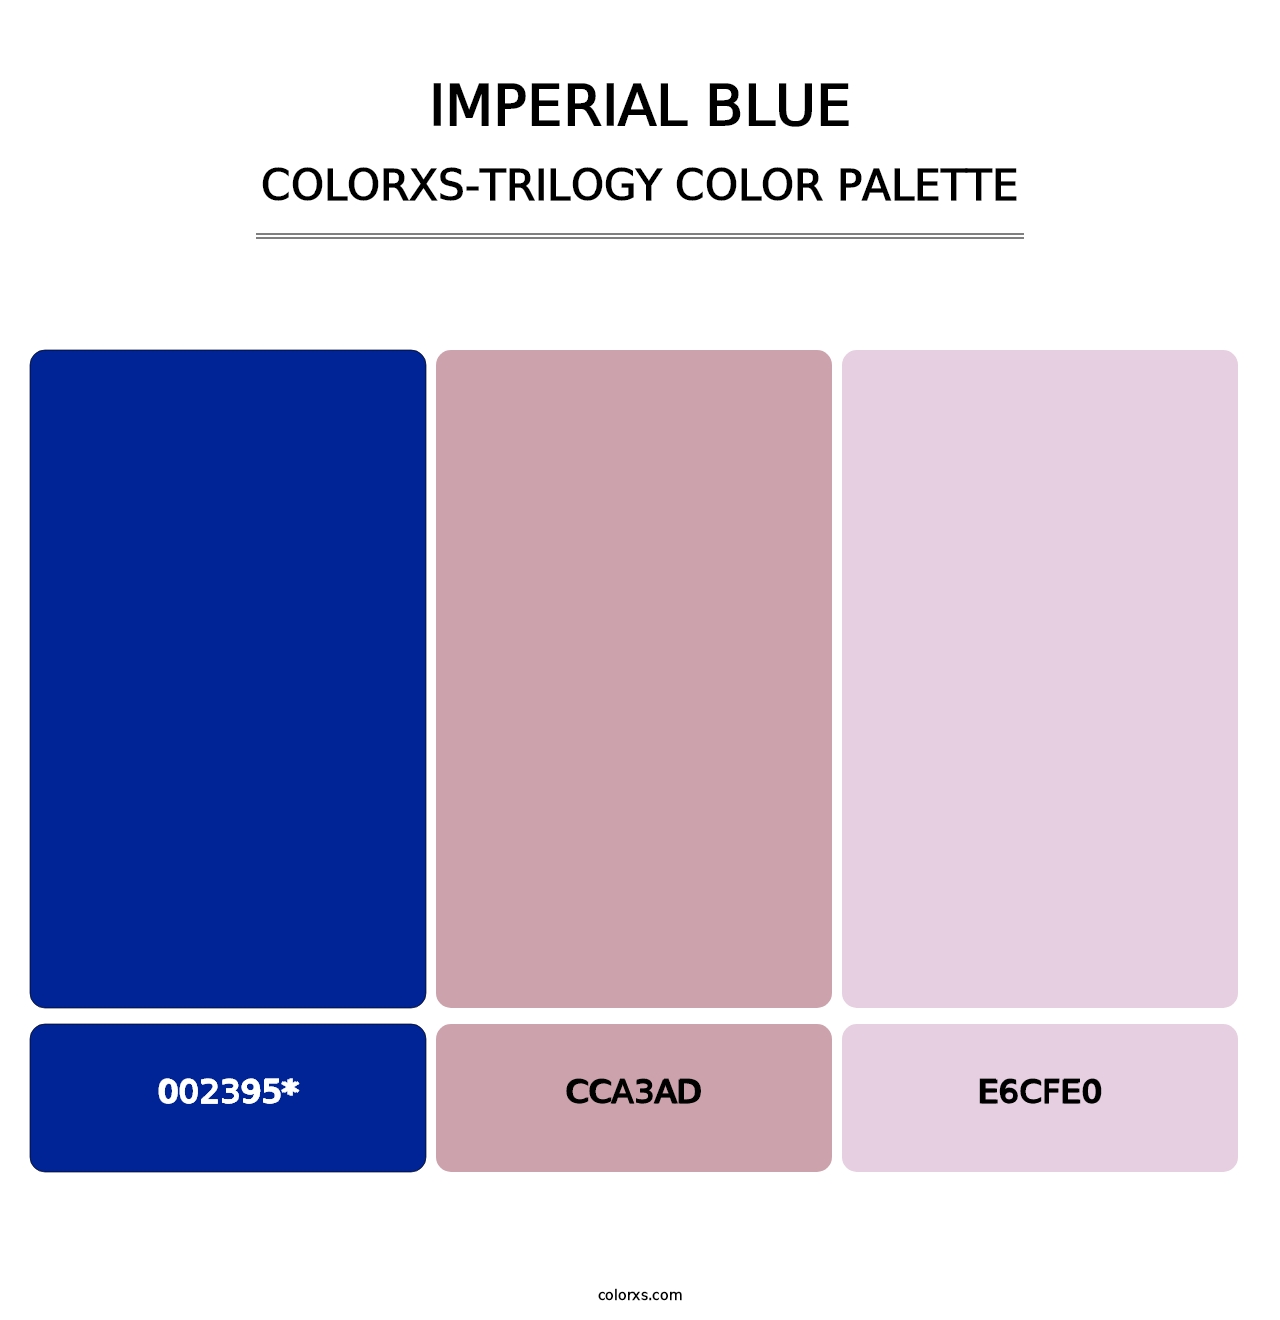 Imperial Blue - Colorxs Trilogy Palette